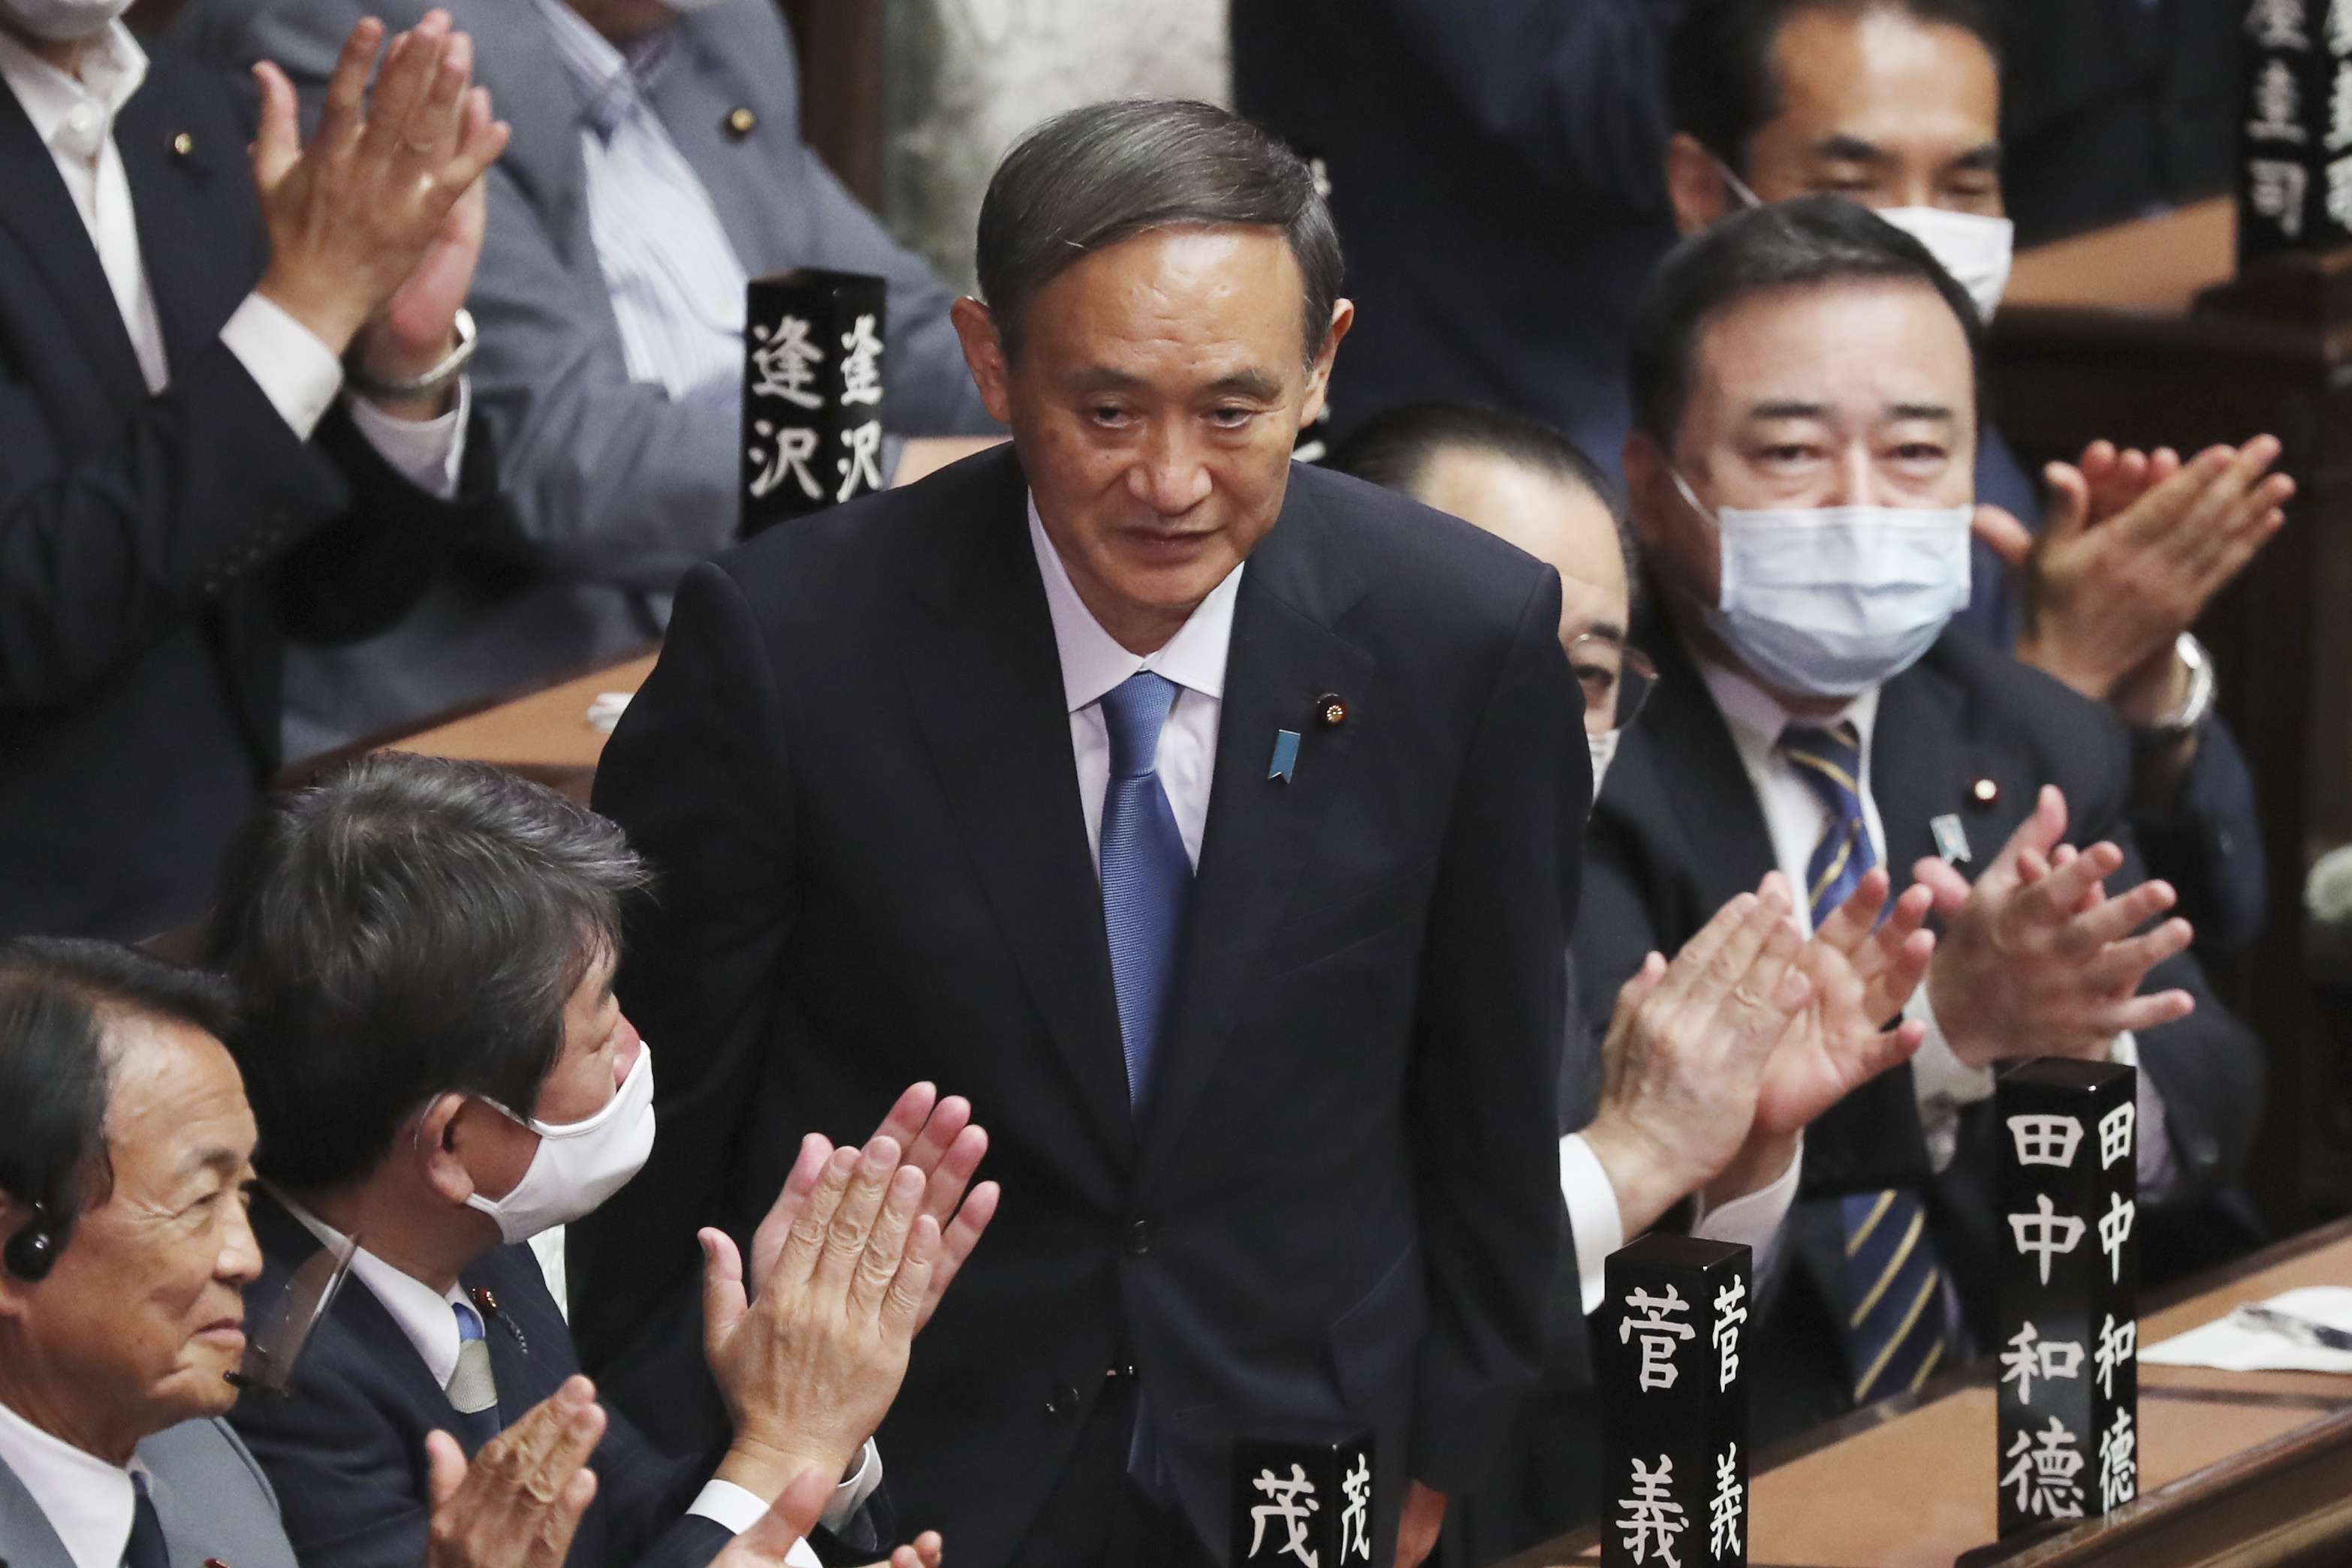 2020년 9월 16일 일본 중의원에서 선출된 스가 요시히데 신임 총리가 의원들의 박수에 고개를 숙이고 있다.  도쿄 AP = 연합뉴스